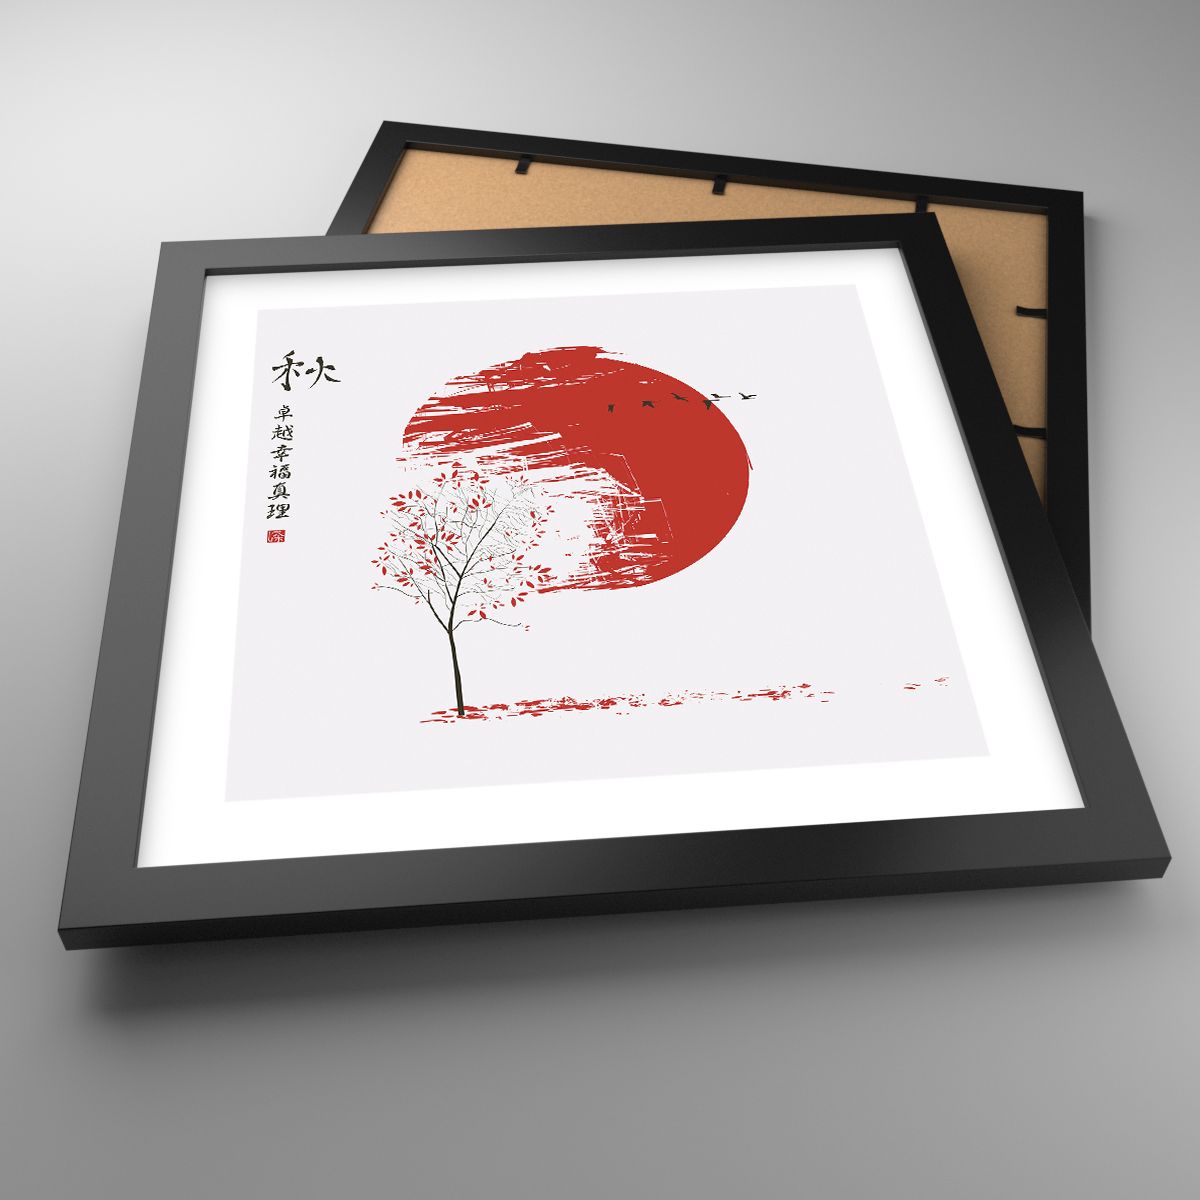 Affiche Abstraction, Affiche Japon, Affiche Fleur De Cerisier, Affiche Graphique, Affiche Le Coucher Du Soleil